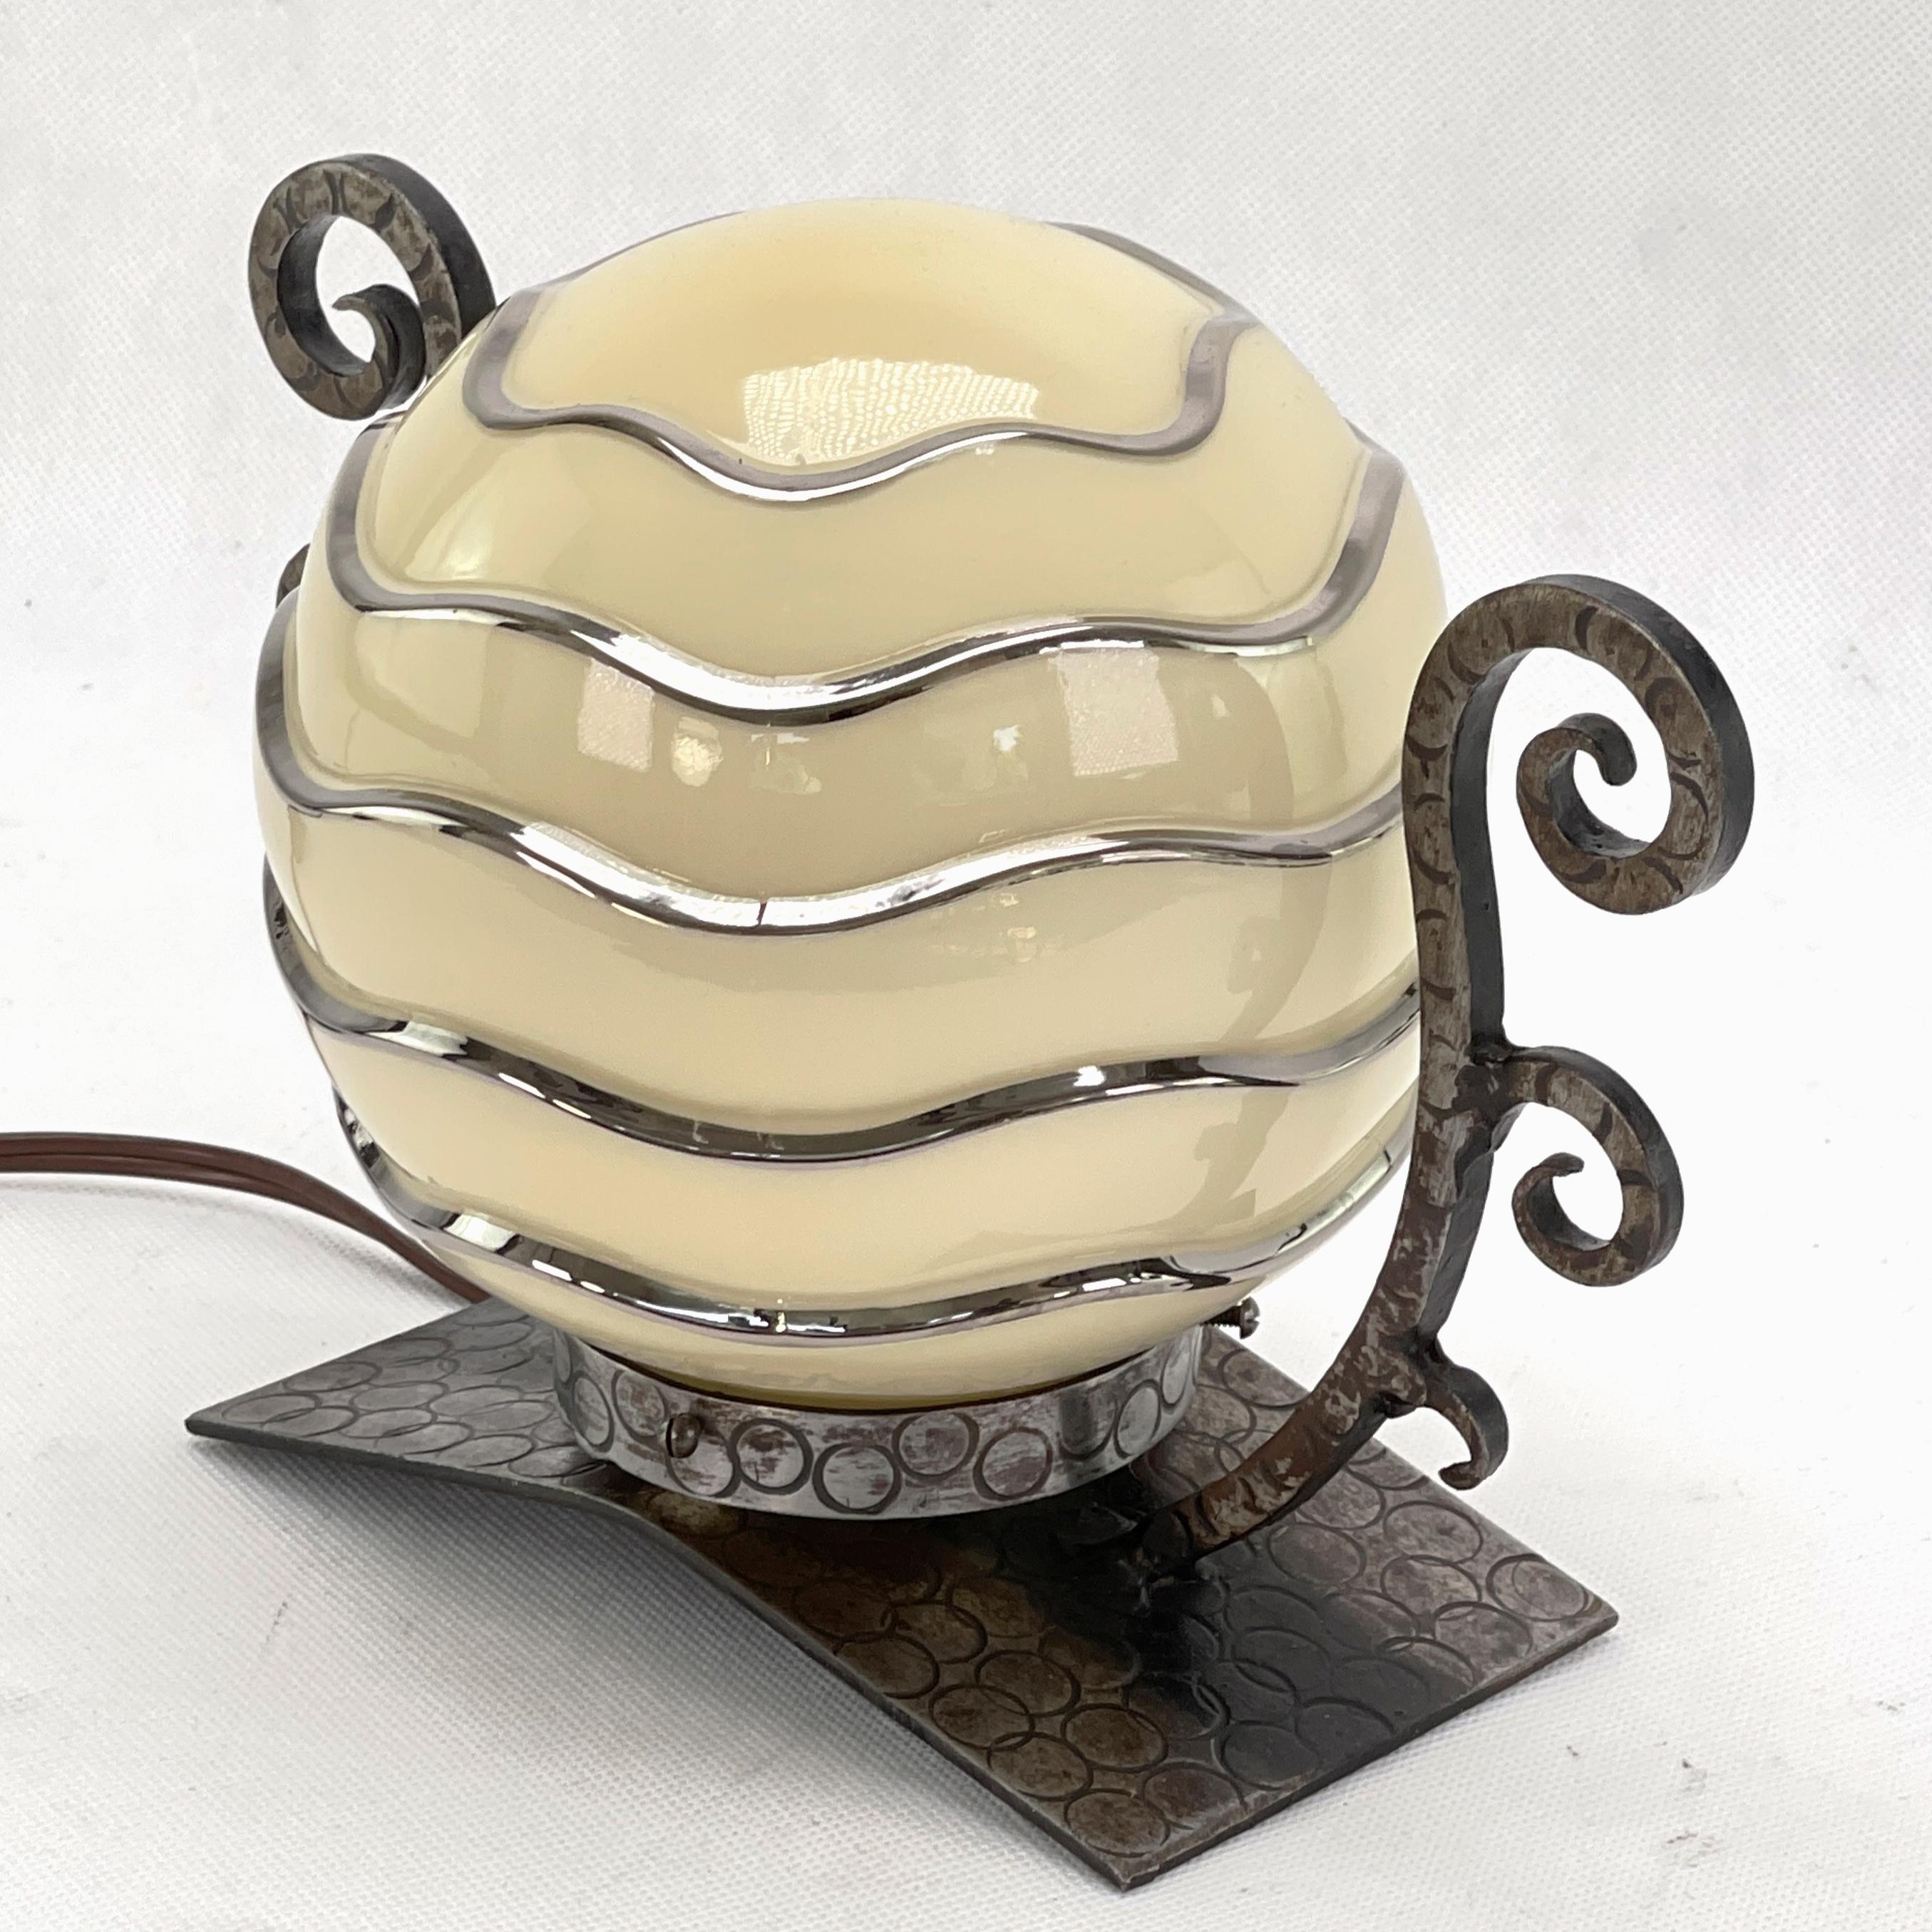 Cette lampe de table originale séduit par son design Art déco simple et naturel. La lampe décorative donne une lumière très agréable. Cette magnifique lampe de table est un classique absolu du design de la période ART DECOS. 

Le verre de la lampe